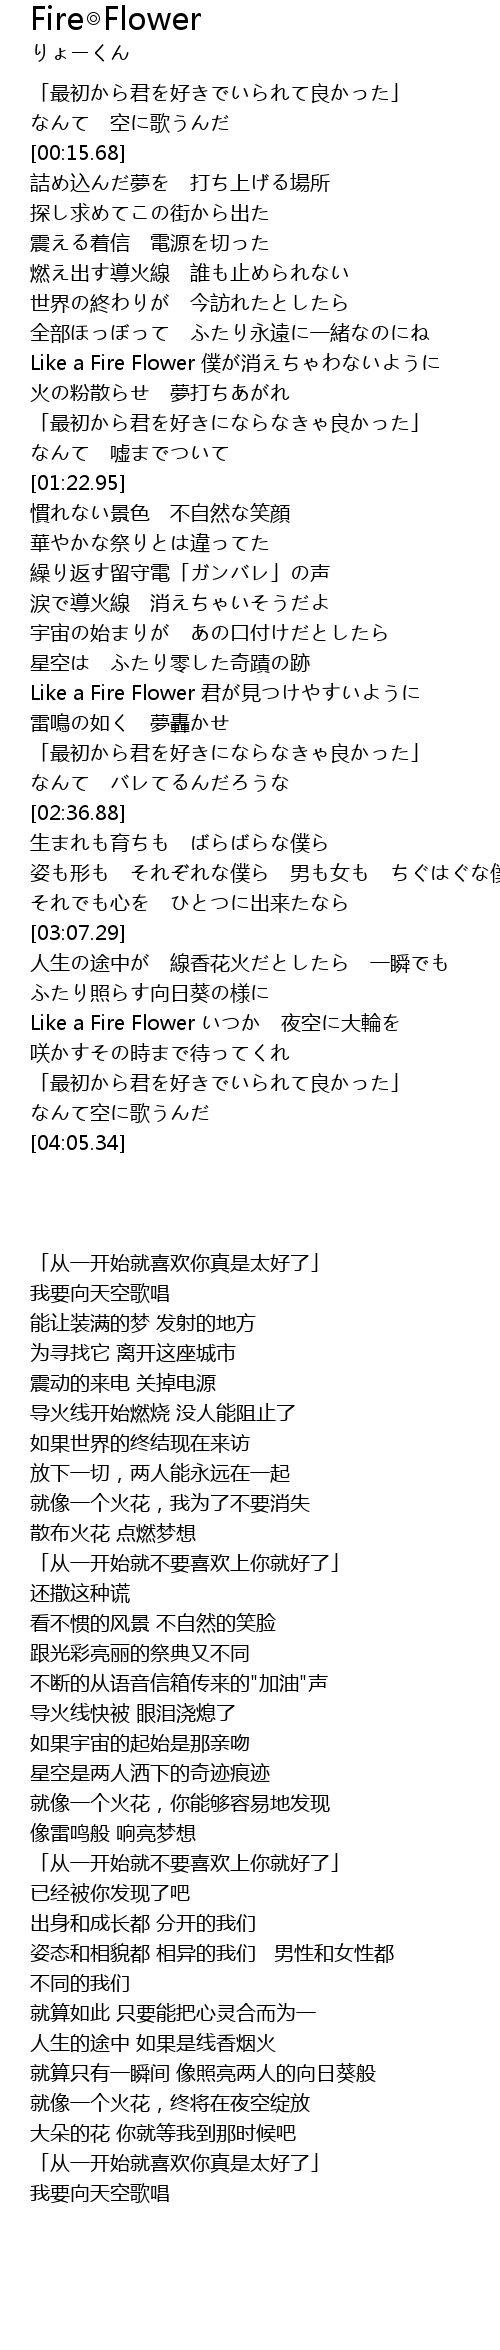 Fire Flower Fire Flower Lyrics Follow Lyrics